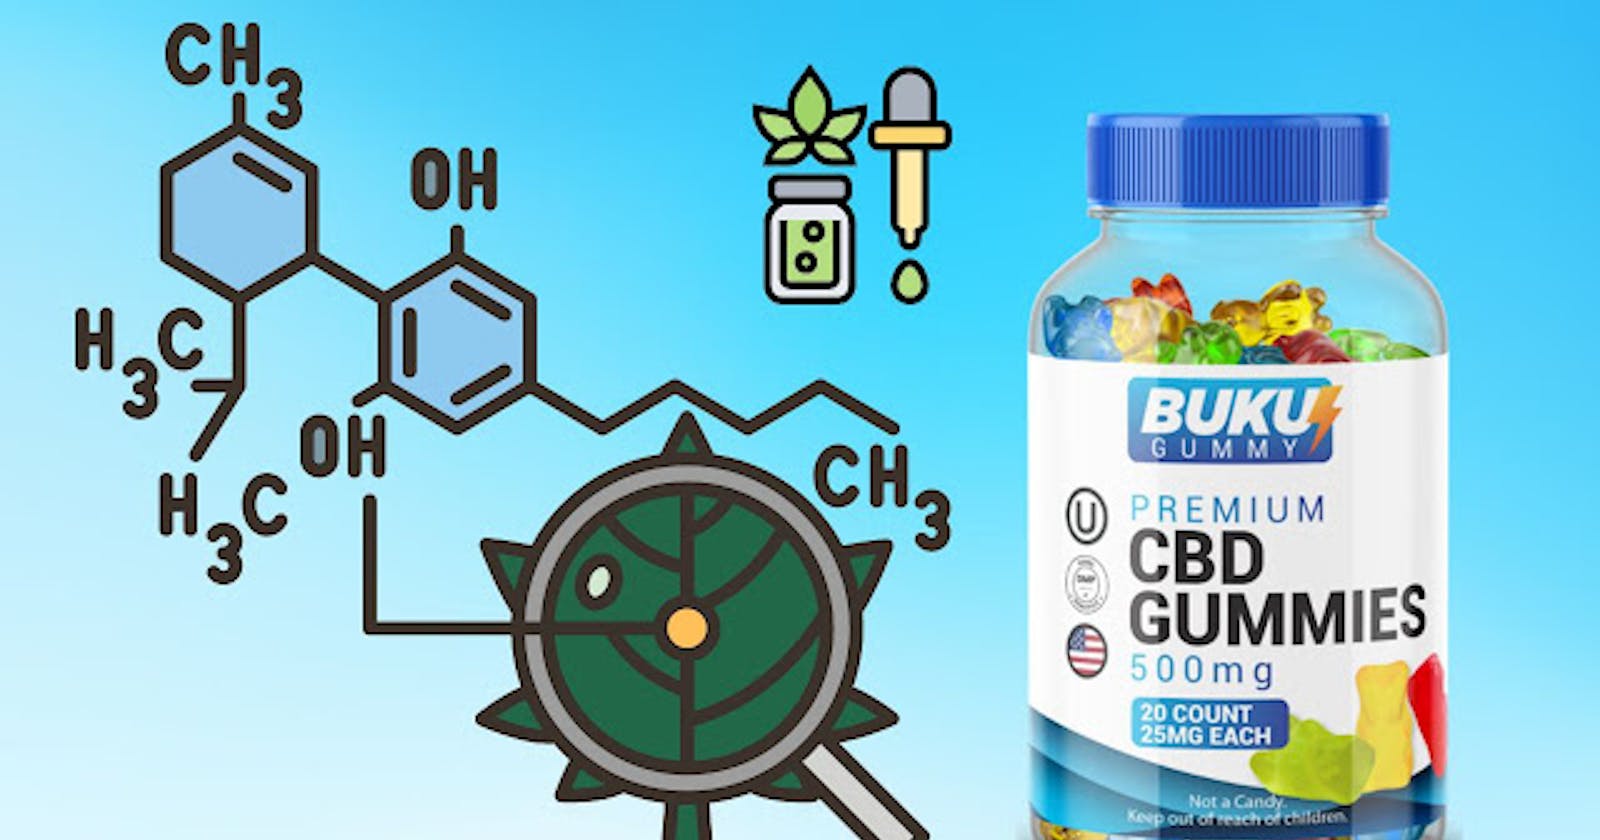 Buku CBD Gummies Reviews: Ingredients, Side Effects, Customer Update